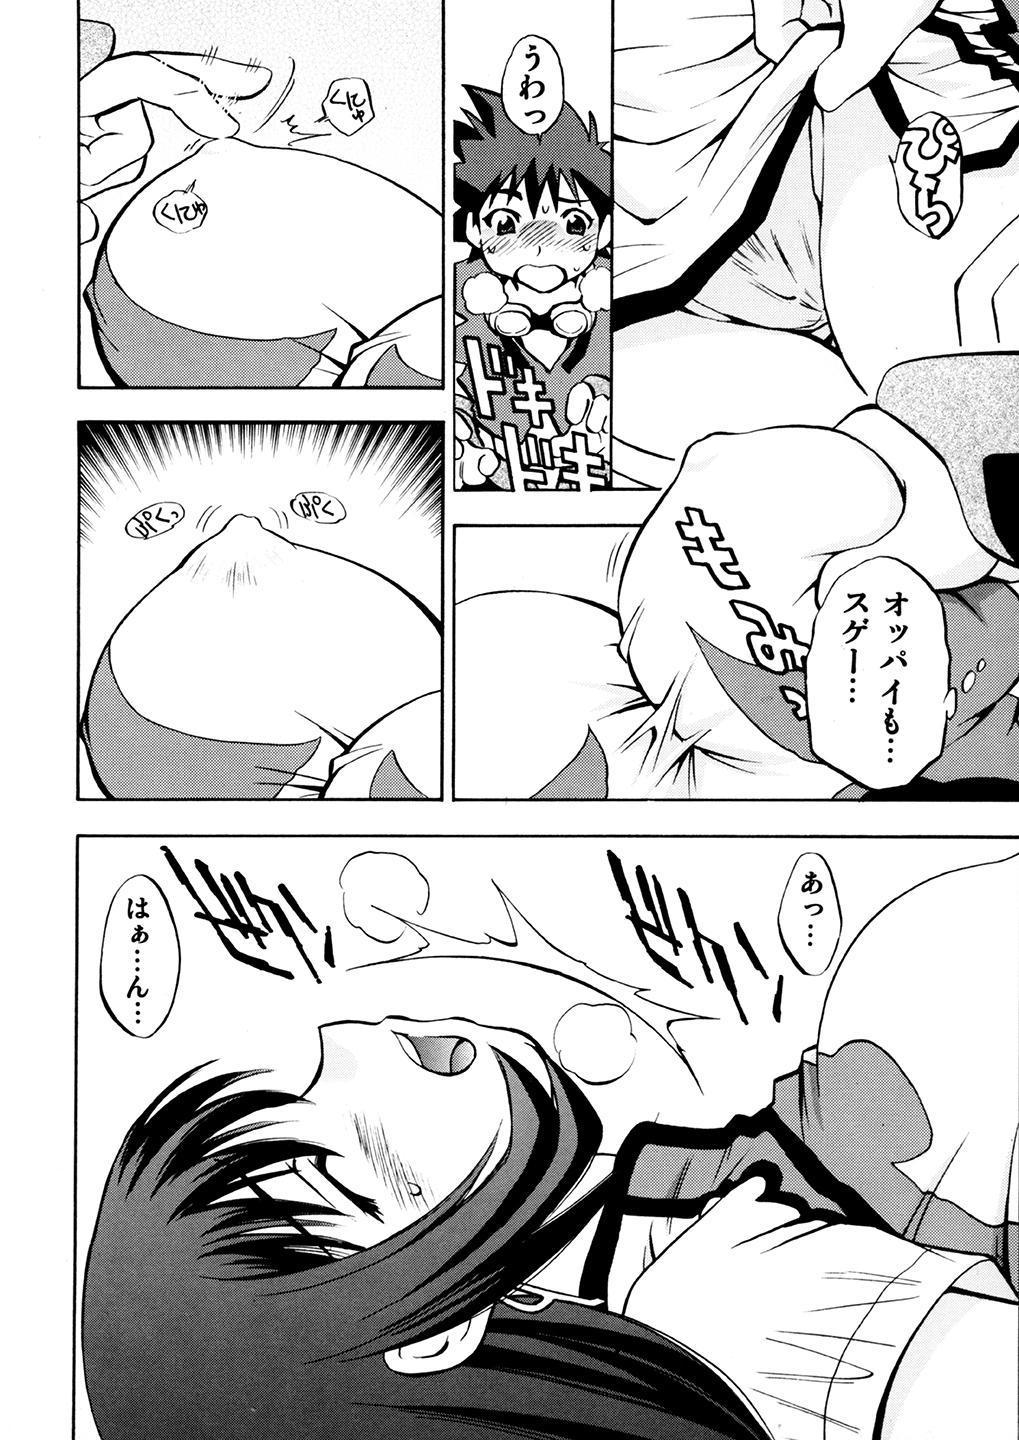 Parties Kotona & Rei Mii - Zoids genesis Petite Teenager - Page 5